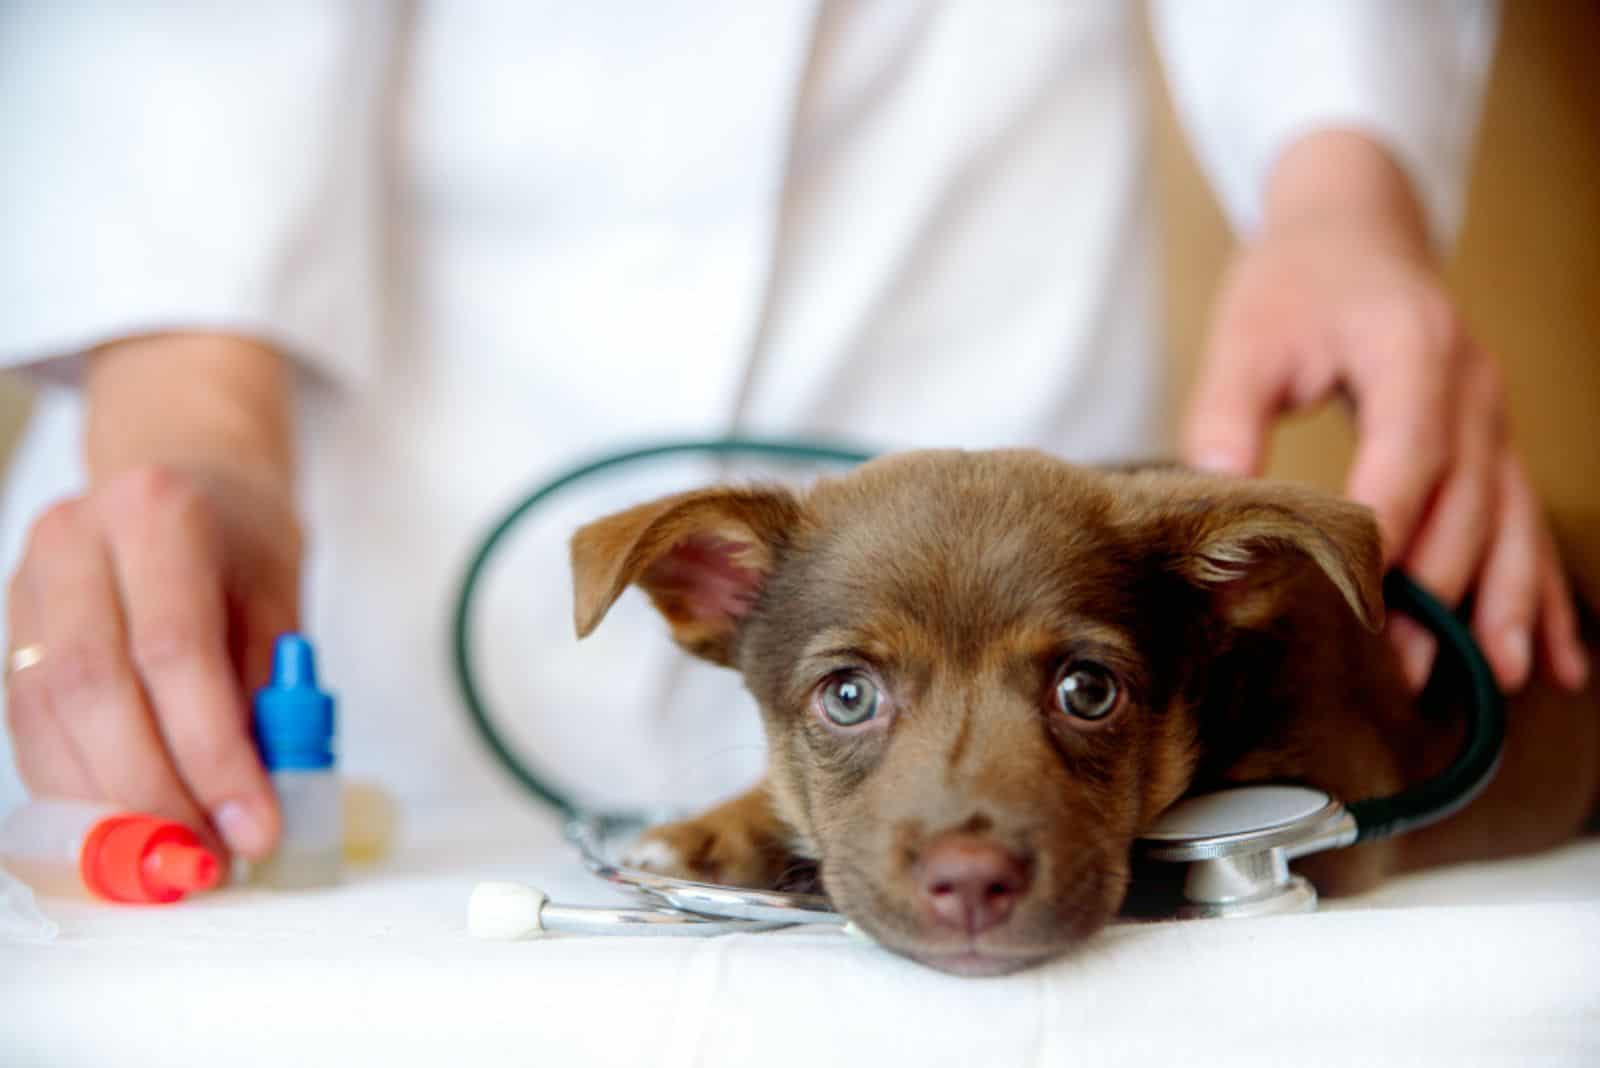 Sad and sick dog at the vet